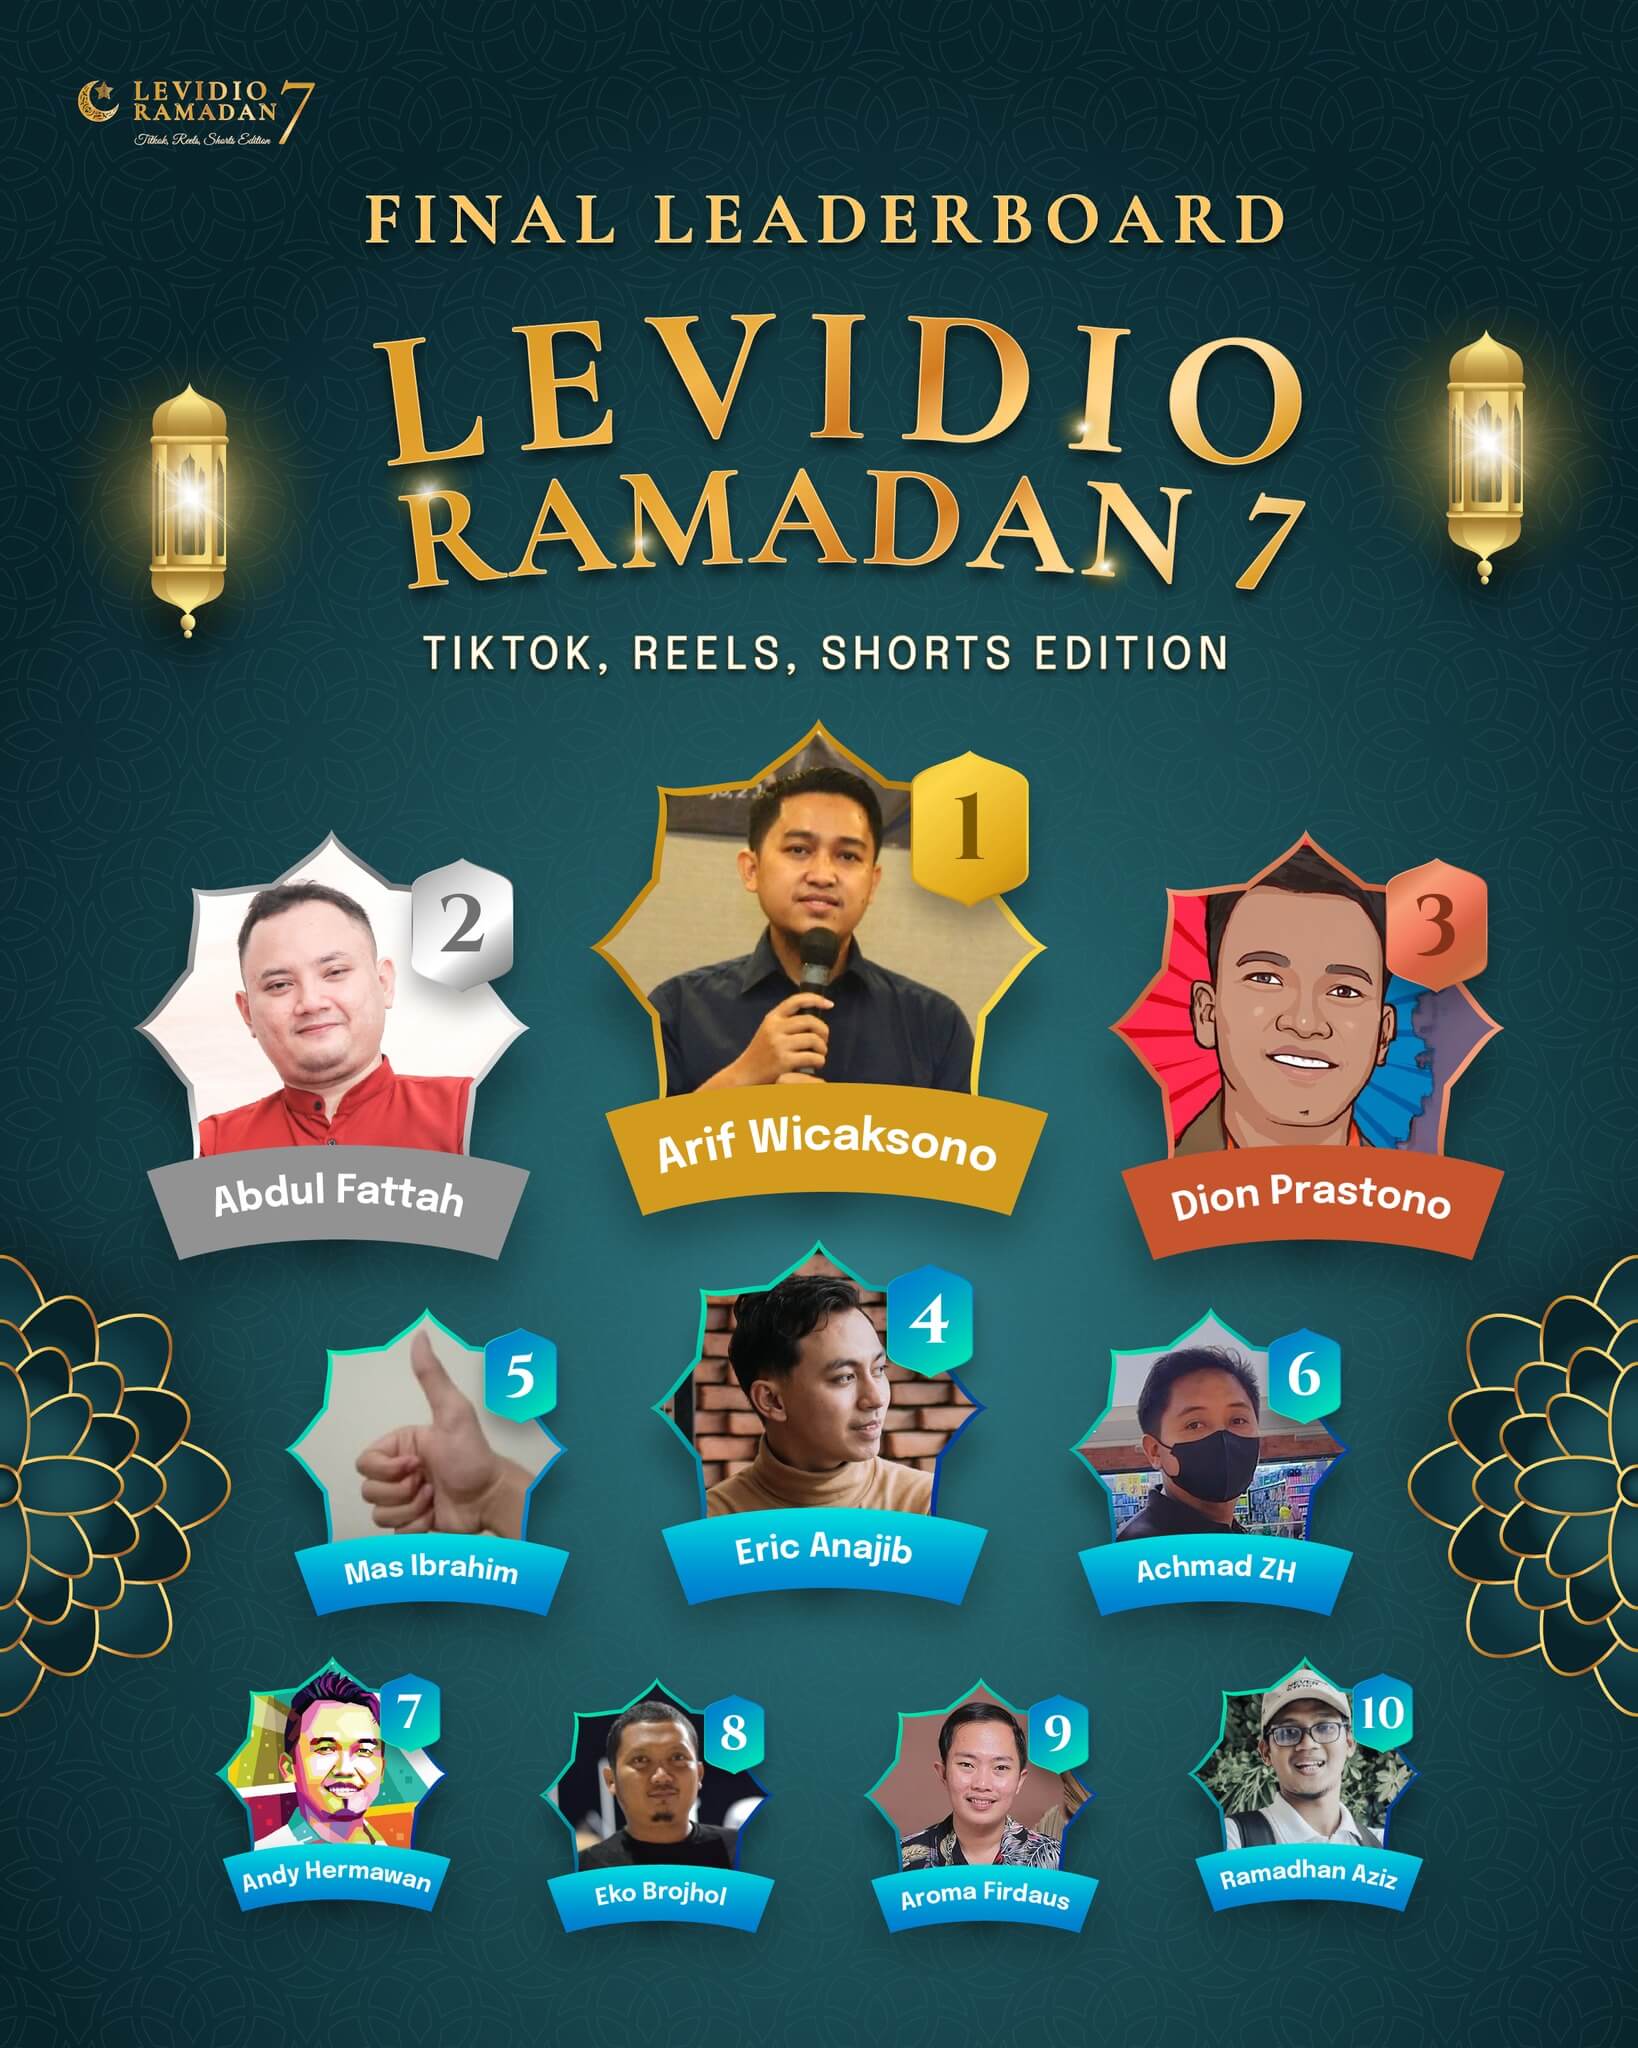 Levidio Ramadan 7